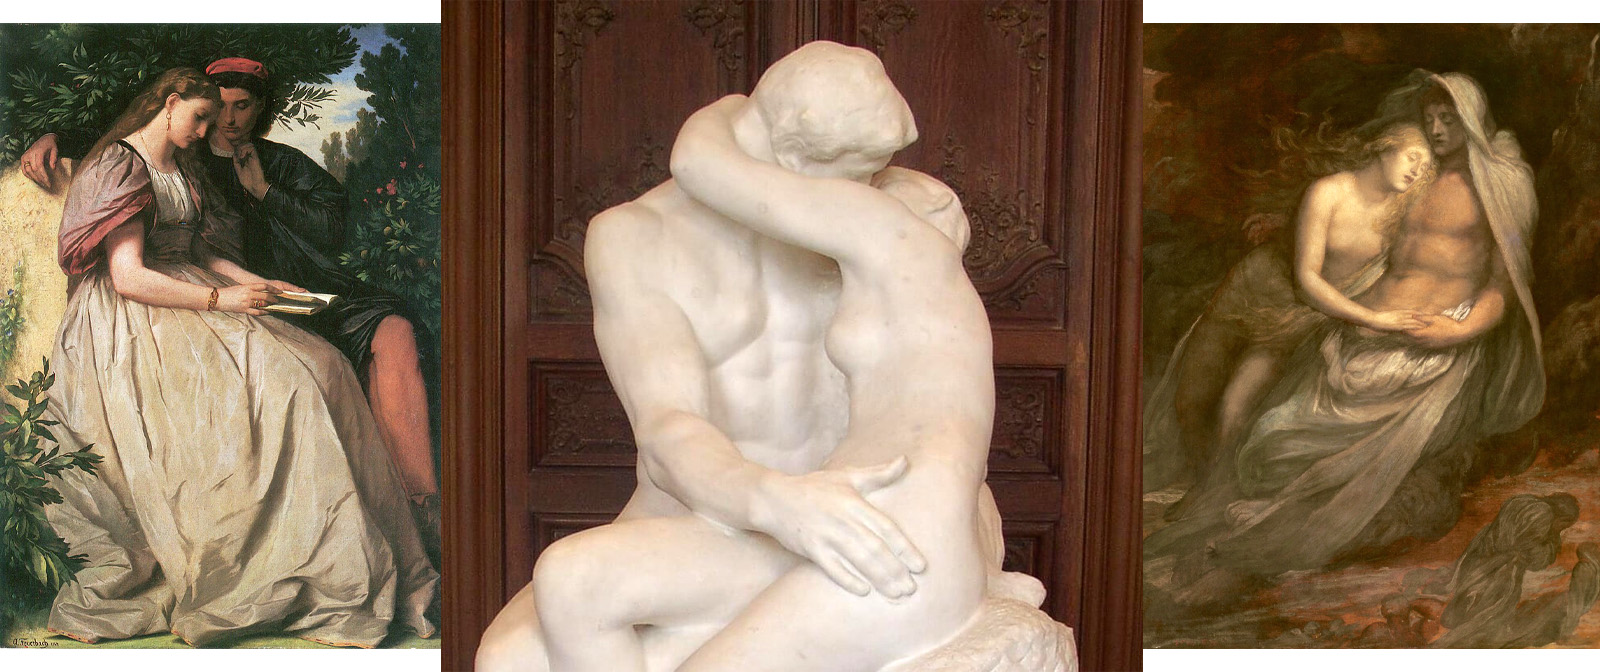 Вызывающая и провокационная. Что такого особенного в скульптуре Родена «Поцелуй», из-за чего она признана всемирно известным шедевром?